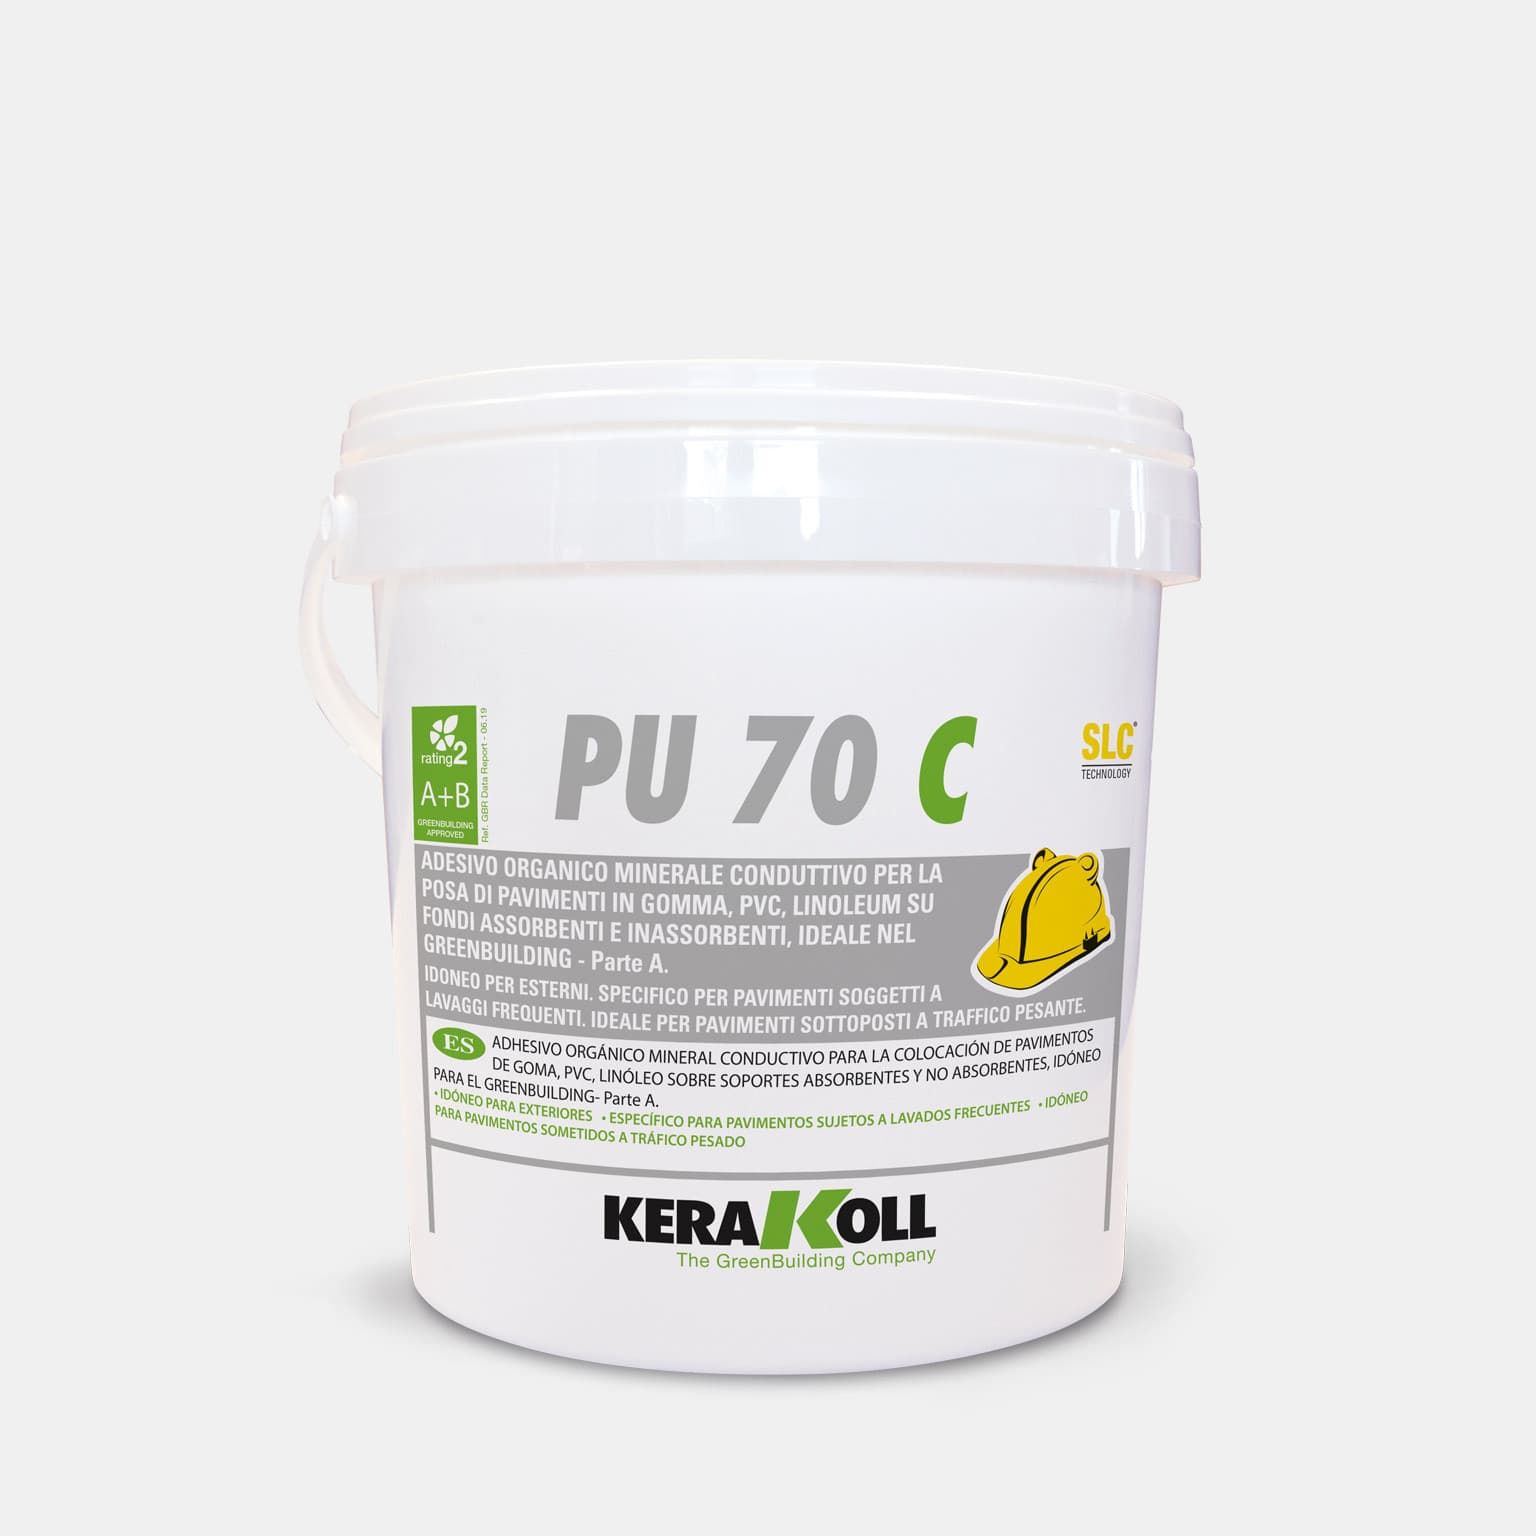 A Kerakoll PU 70 C egy Ásványi eredetű, vezetőképes, szerves ragasztó vezetőképes gumi‑, PVC‑, linóleumpadlók lerakásához nedvszívó és nem nedvszívó aljzatra, ideális használatra a GreenBuildingben.